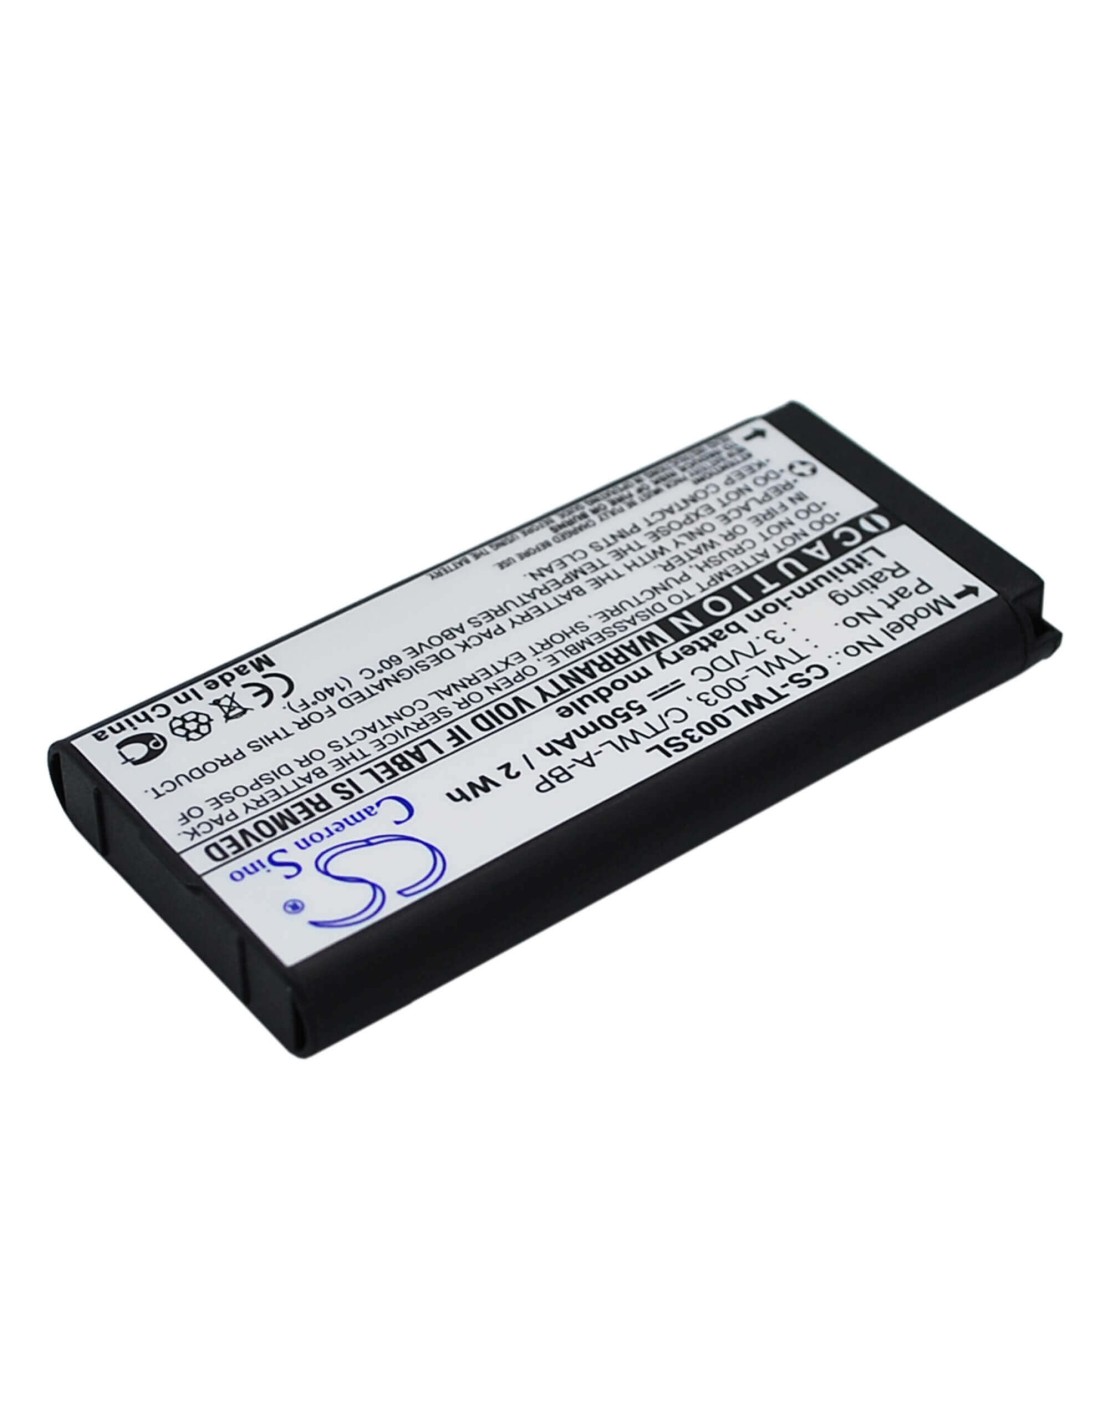 Battery for Nintendo Dsi, Ndsi, Ndsil 3.7V, 550mAh - 2.04Wh